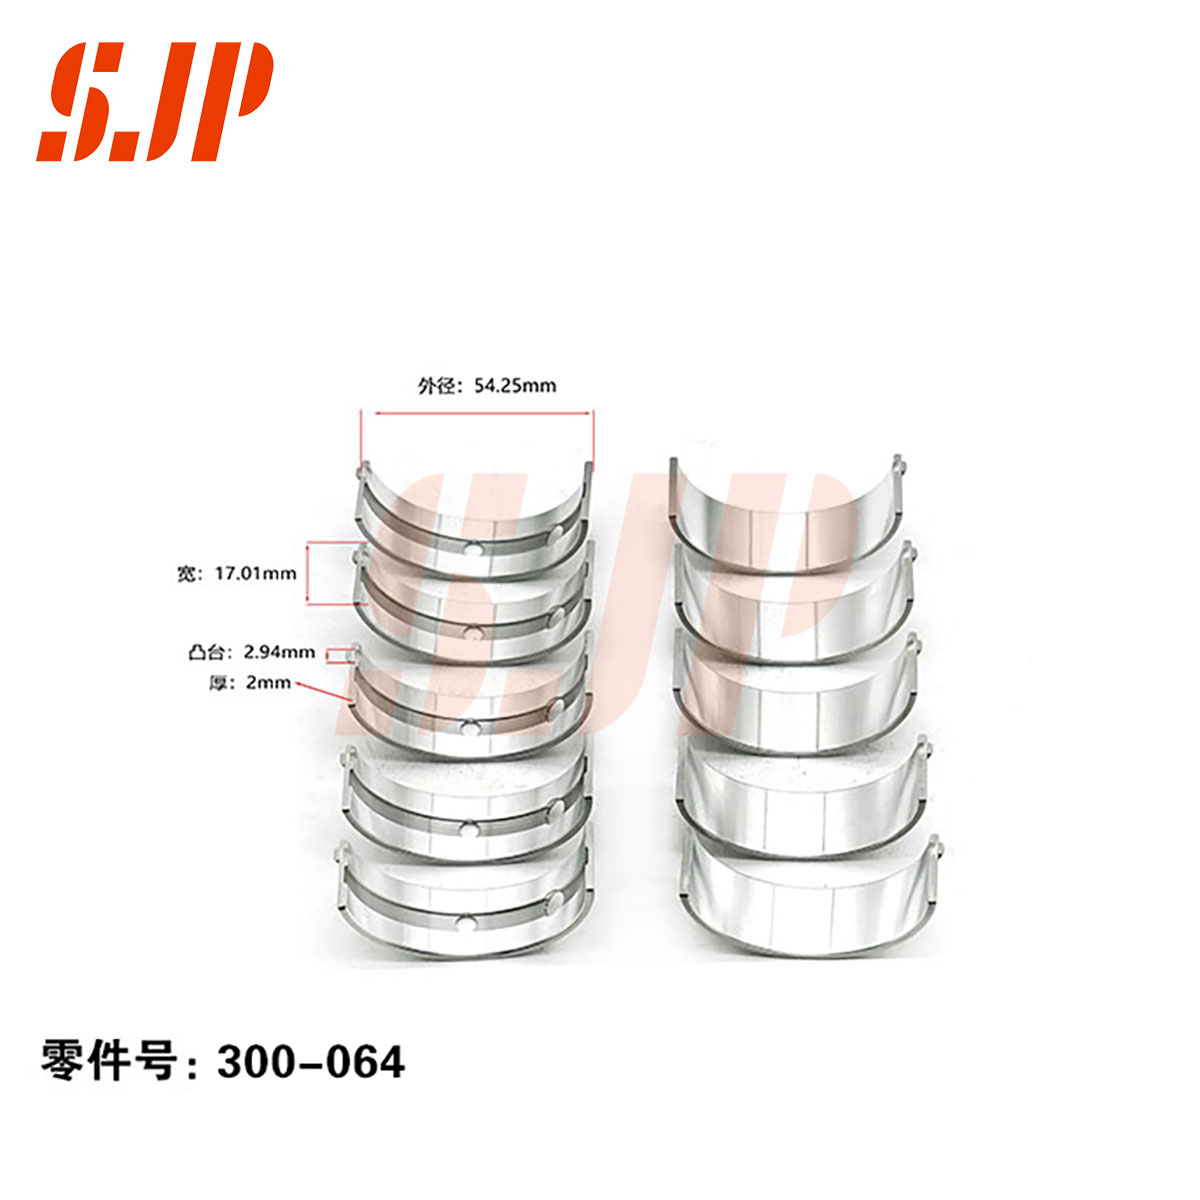 SJ-300-064 Main Bearing Set For SGMW Baojun1.5T LL5